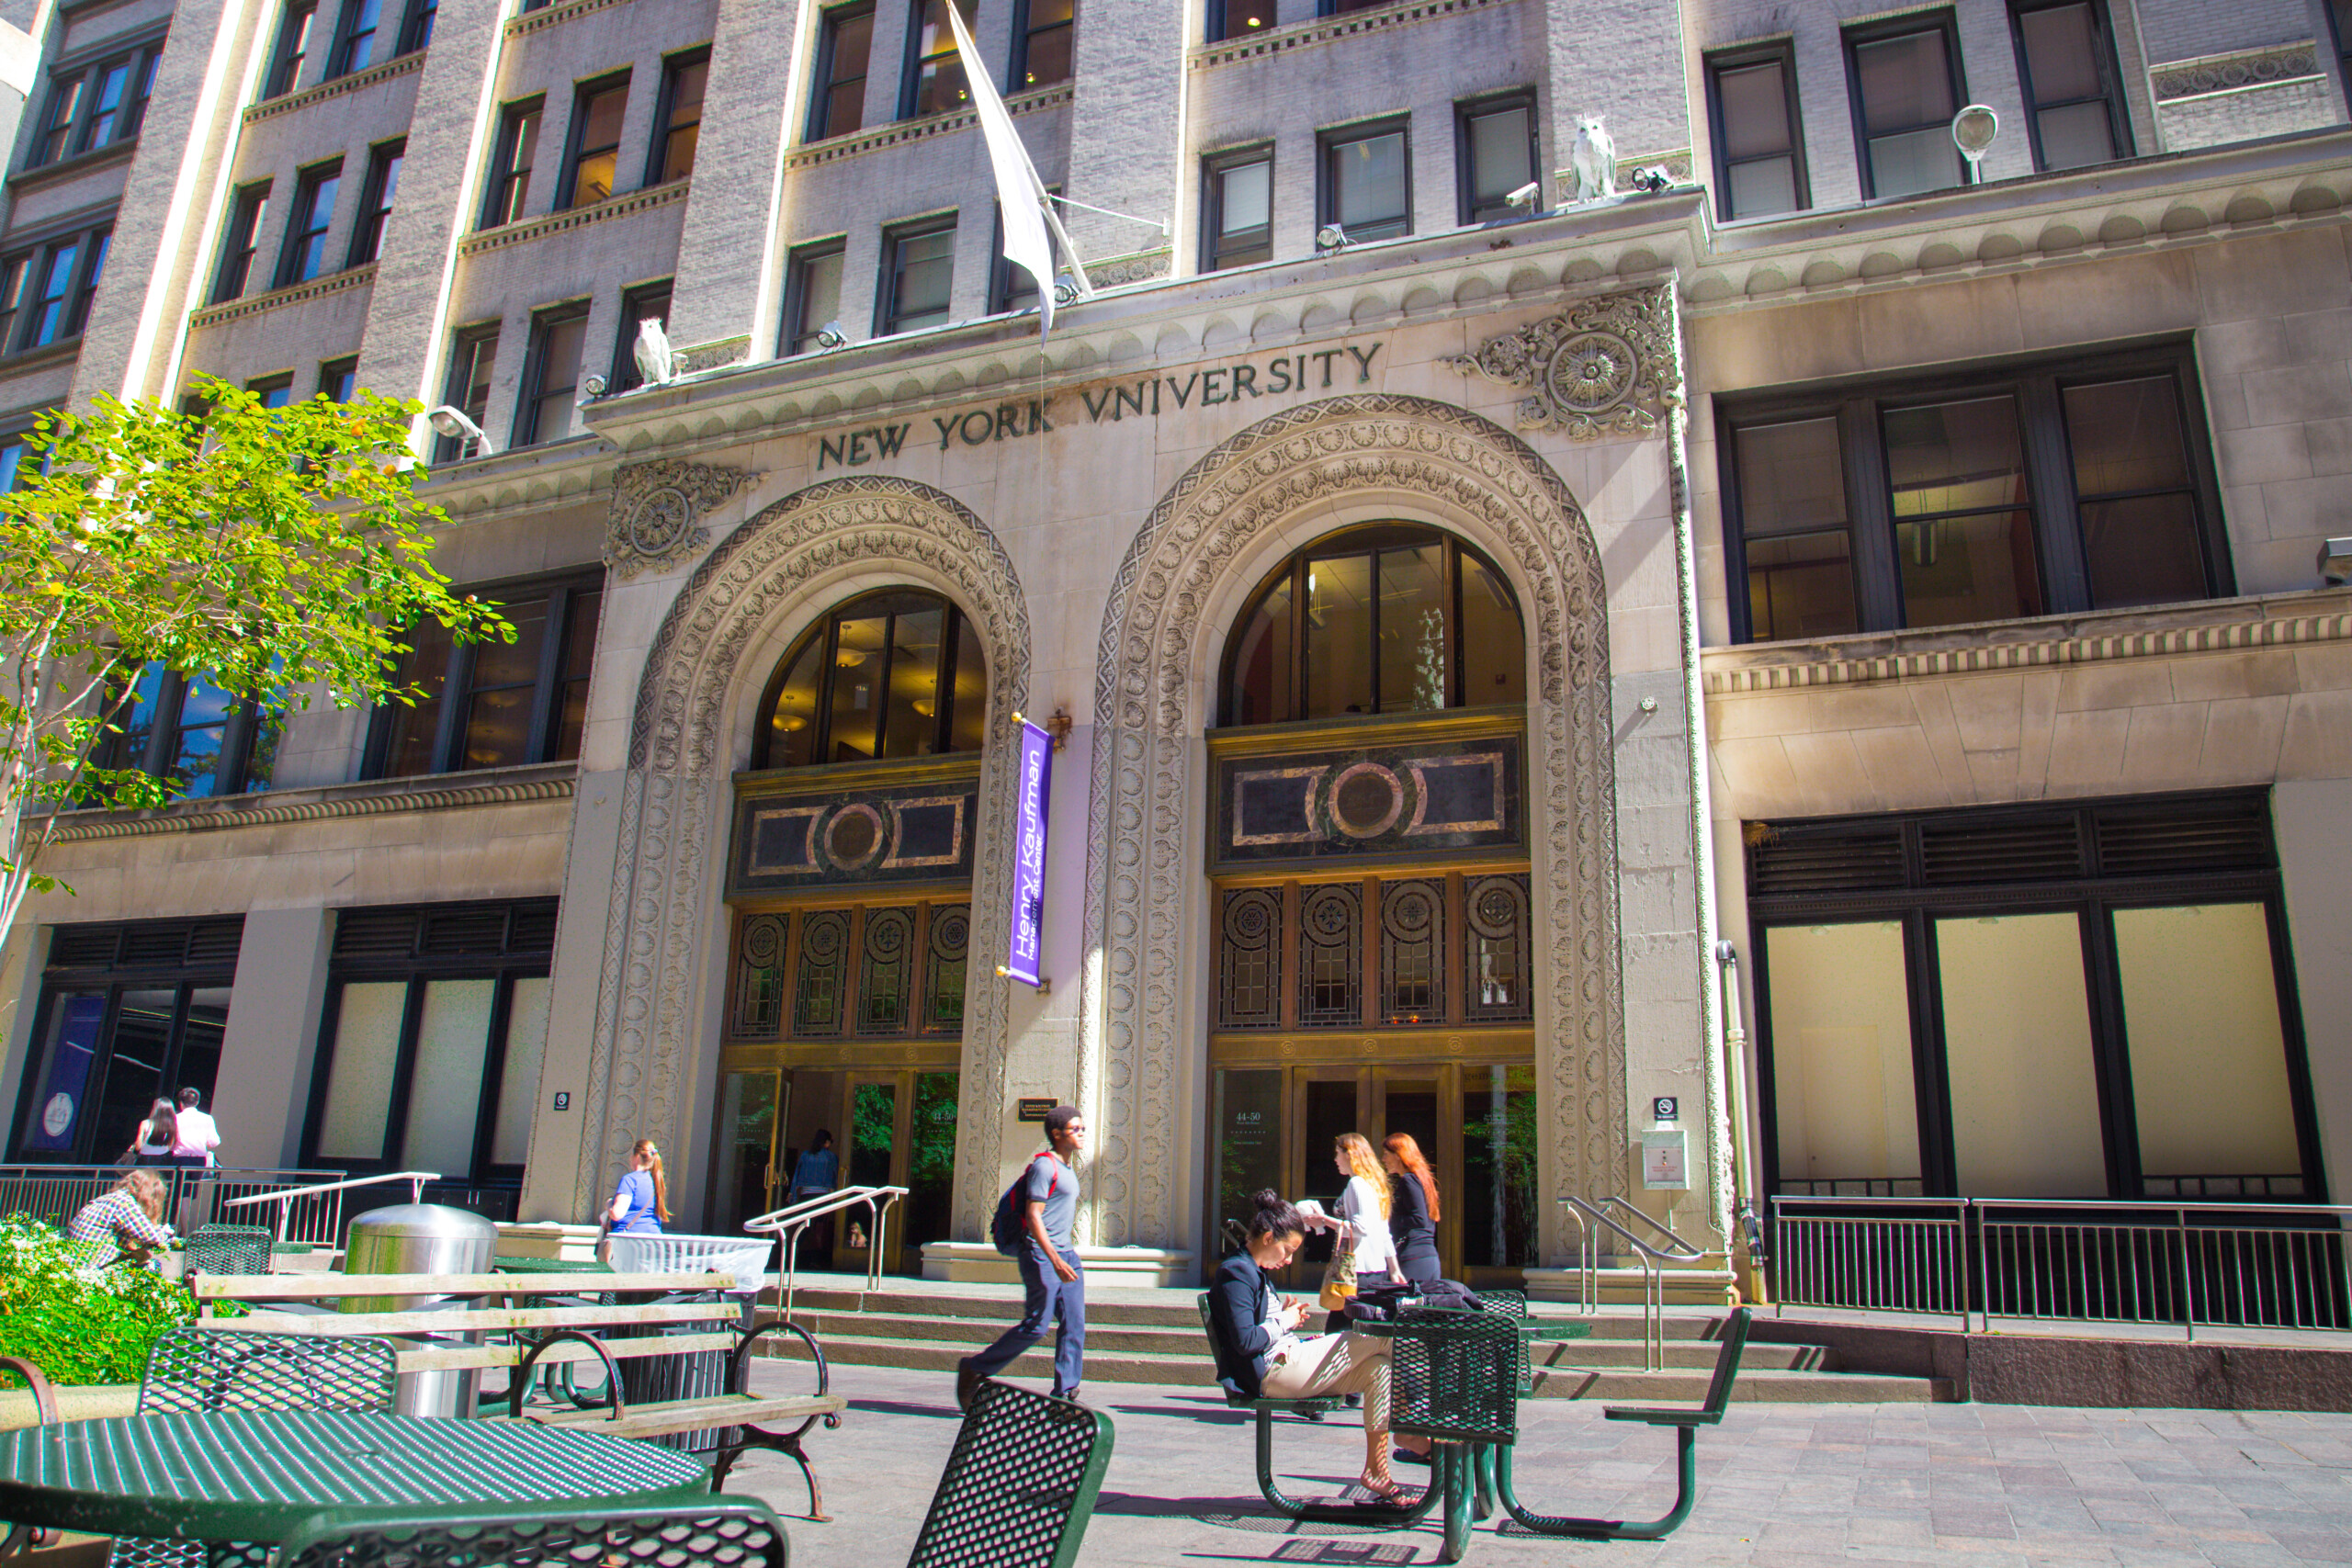 Nowy Jork - 13 września 2013: Kaufman Management Ctr. na Stern of New York University na Manhattanie. Stern School na NYU to jedna z najstarszych i najbardziej prestiżowych szkół biznesu na świecie., licencjat: shutterstock/By littlenySTOCK